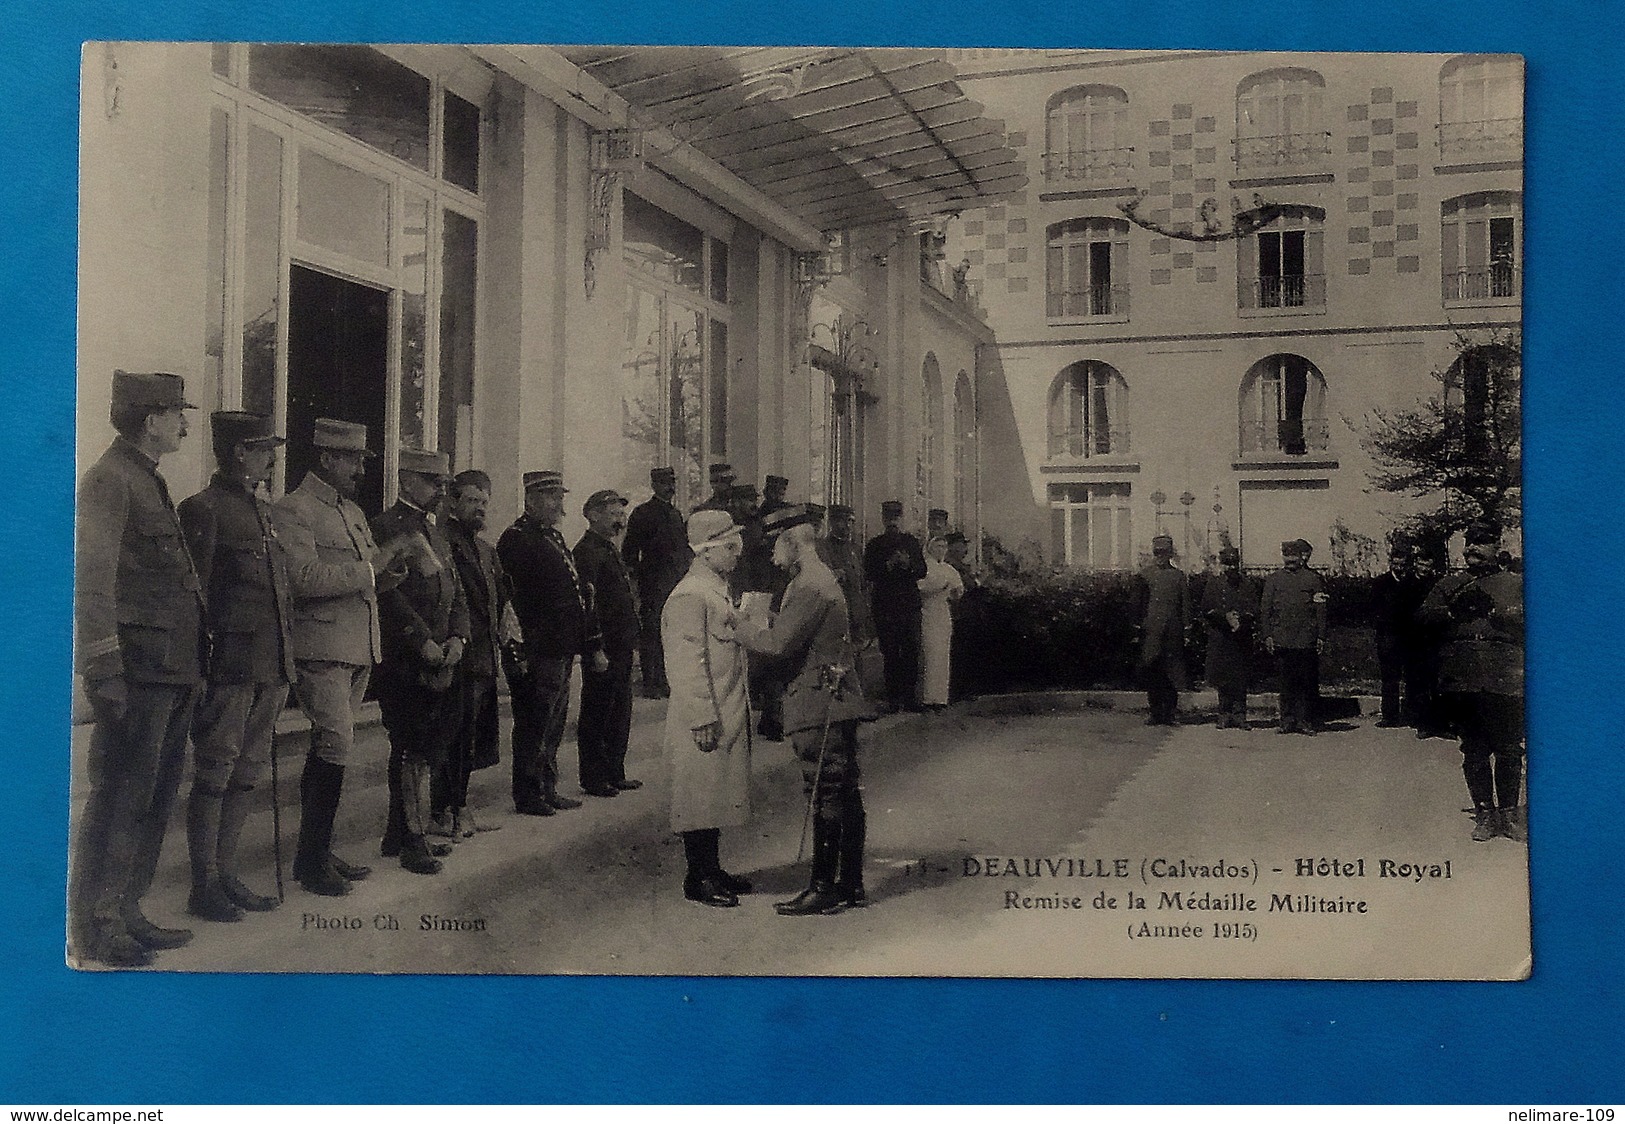 Cpa MILITARIA GUERRE 1914 DEAUVILLE HOTEL ROYAL REMISE DE LA MEDAILLE MILITAIRE En 1915 - Deauville